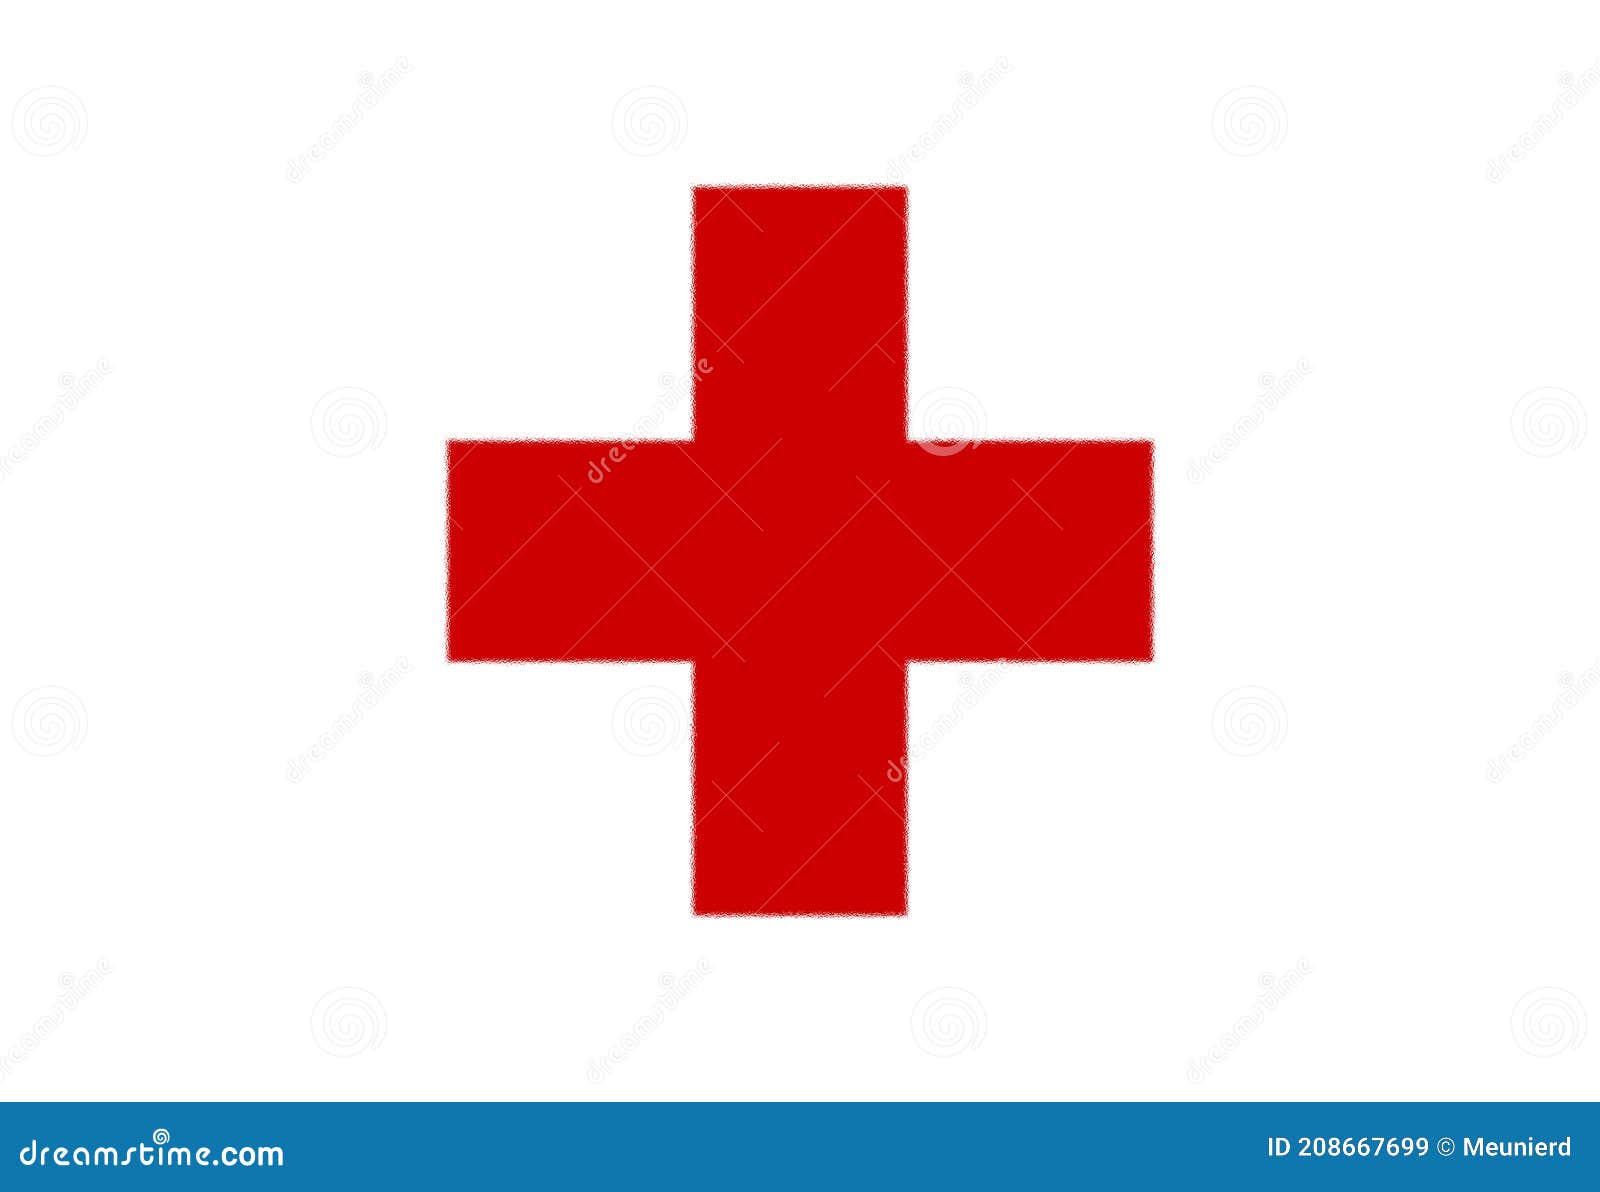 Dấu cộng màu trắng nổi bật trên nền đỏ đầy cảm hứng sẽ khiến bạn nhớ đến biểu tượng của Tổ chức Hồng thập tư. Hãy cùng xem hình để khám phá ý nghĩa đằng sau chiếc lá cứa đặc trưng của biểu tượng này. Tình người và sự cứu trợ đã được tuyên truyền khắp thế giới với biểu tượng này.